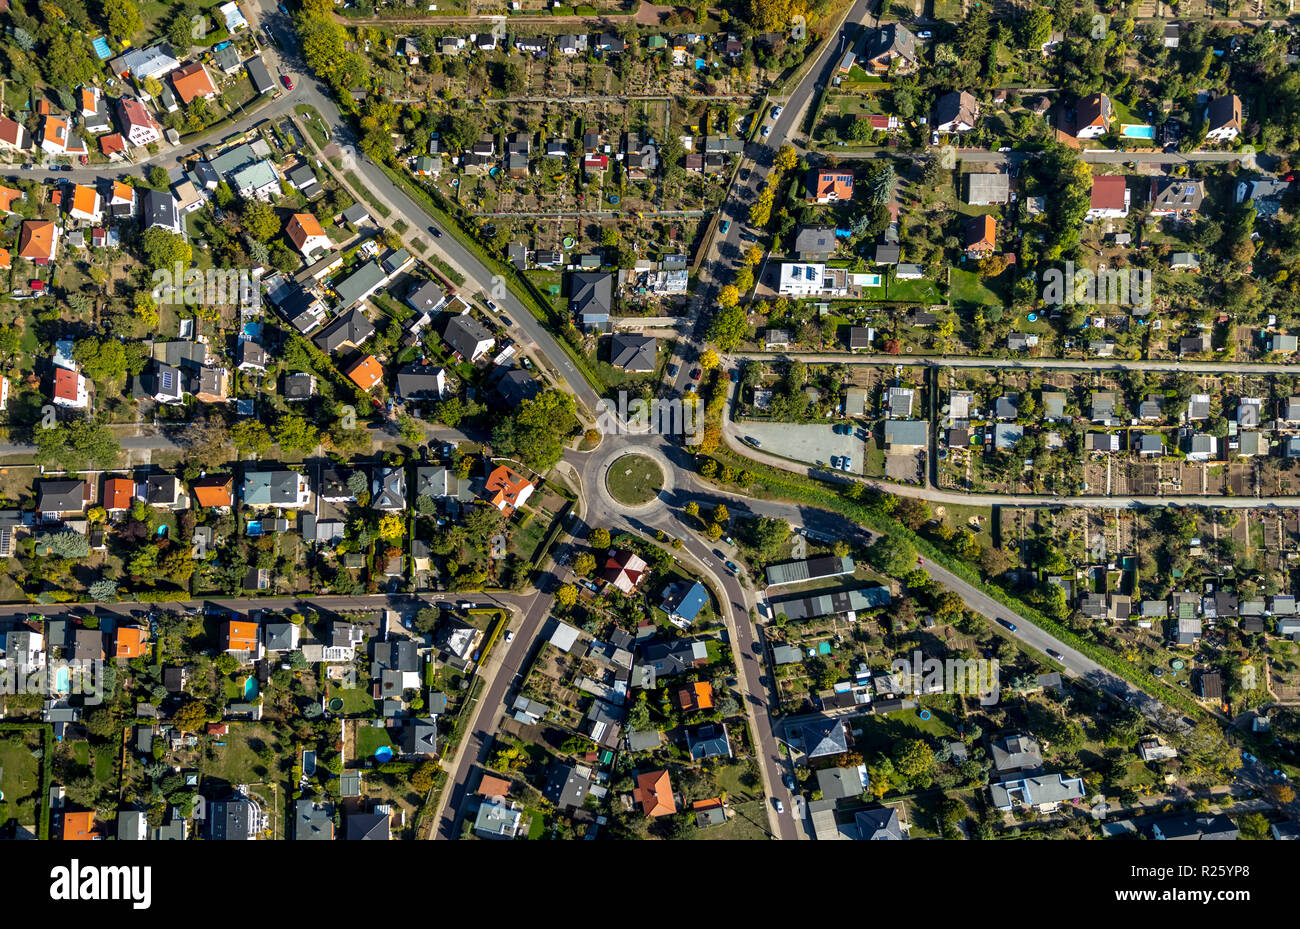 Vista aérea de la colonia, las habilitaciones Magdeburg Noroeste, asentamiento de adjudicación, Neustädter Feld, Magdeburgo, Sajonia-Anhalt, Alemania Foto de stock